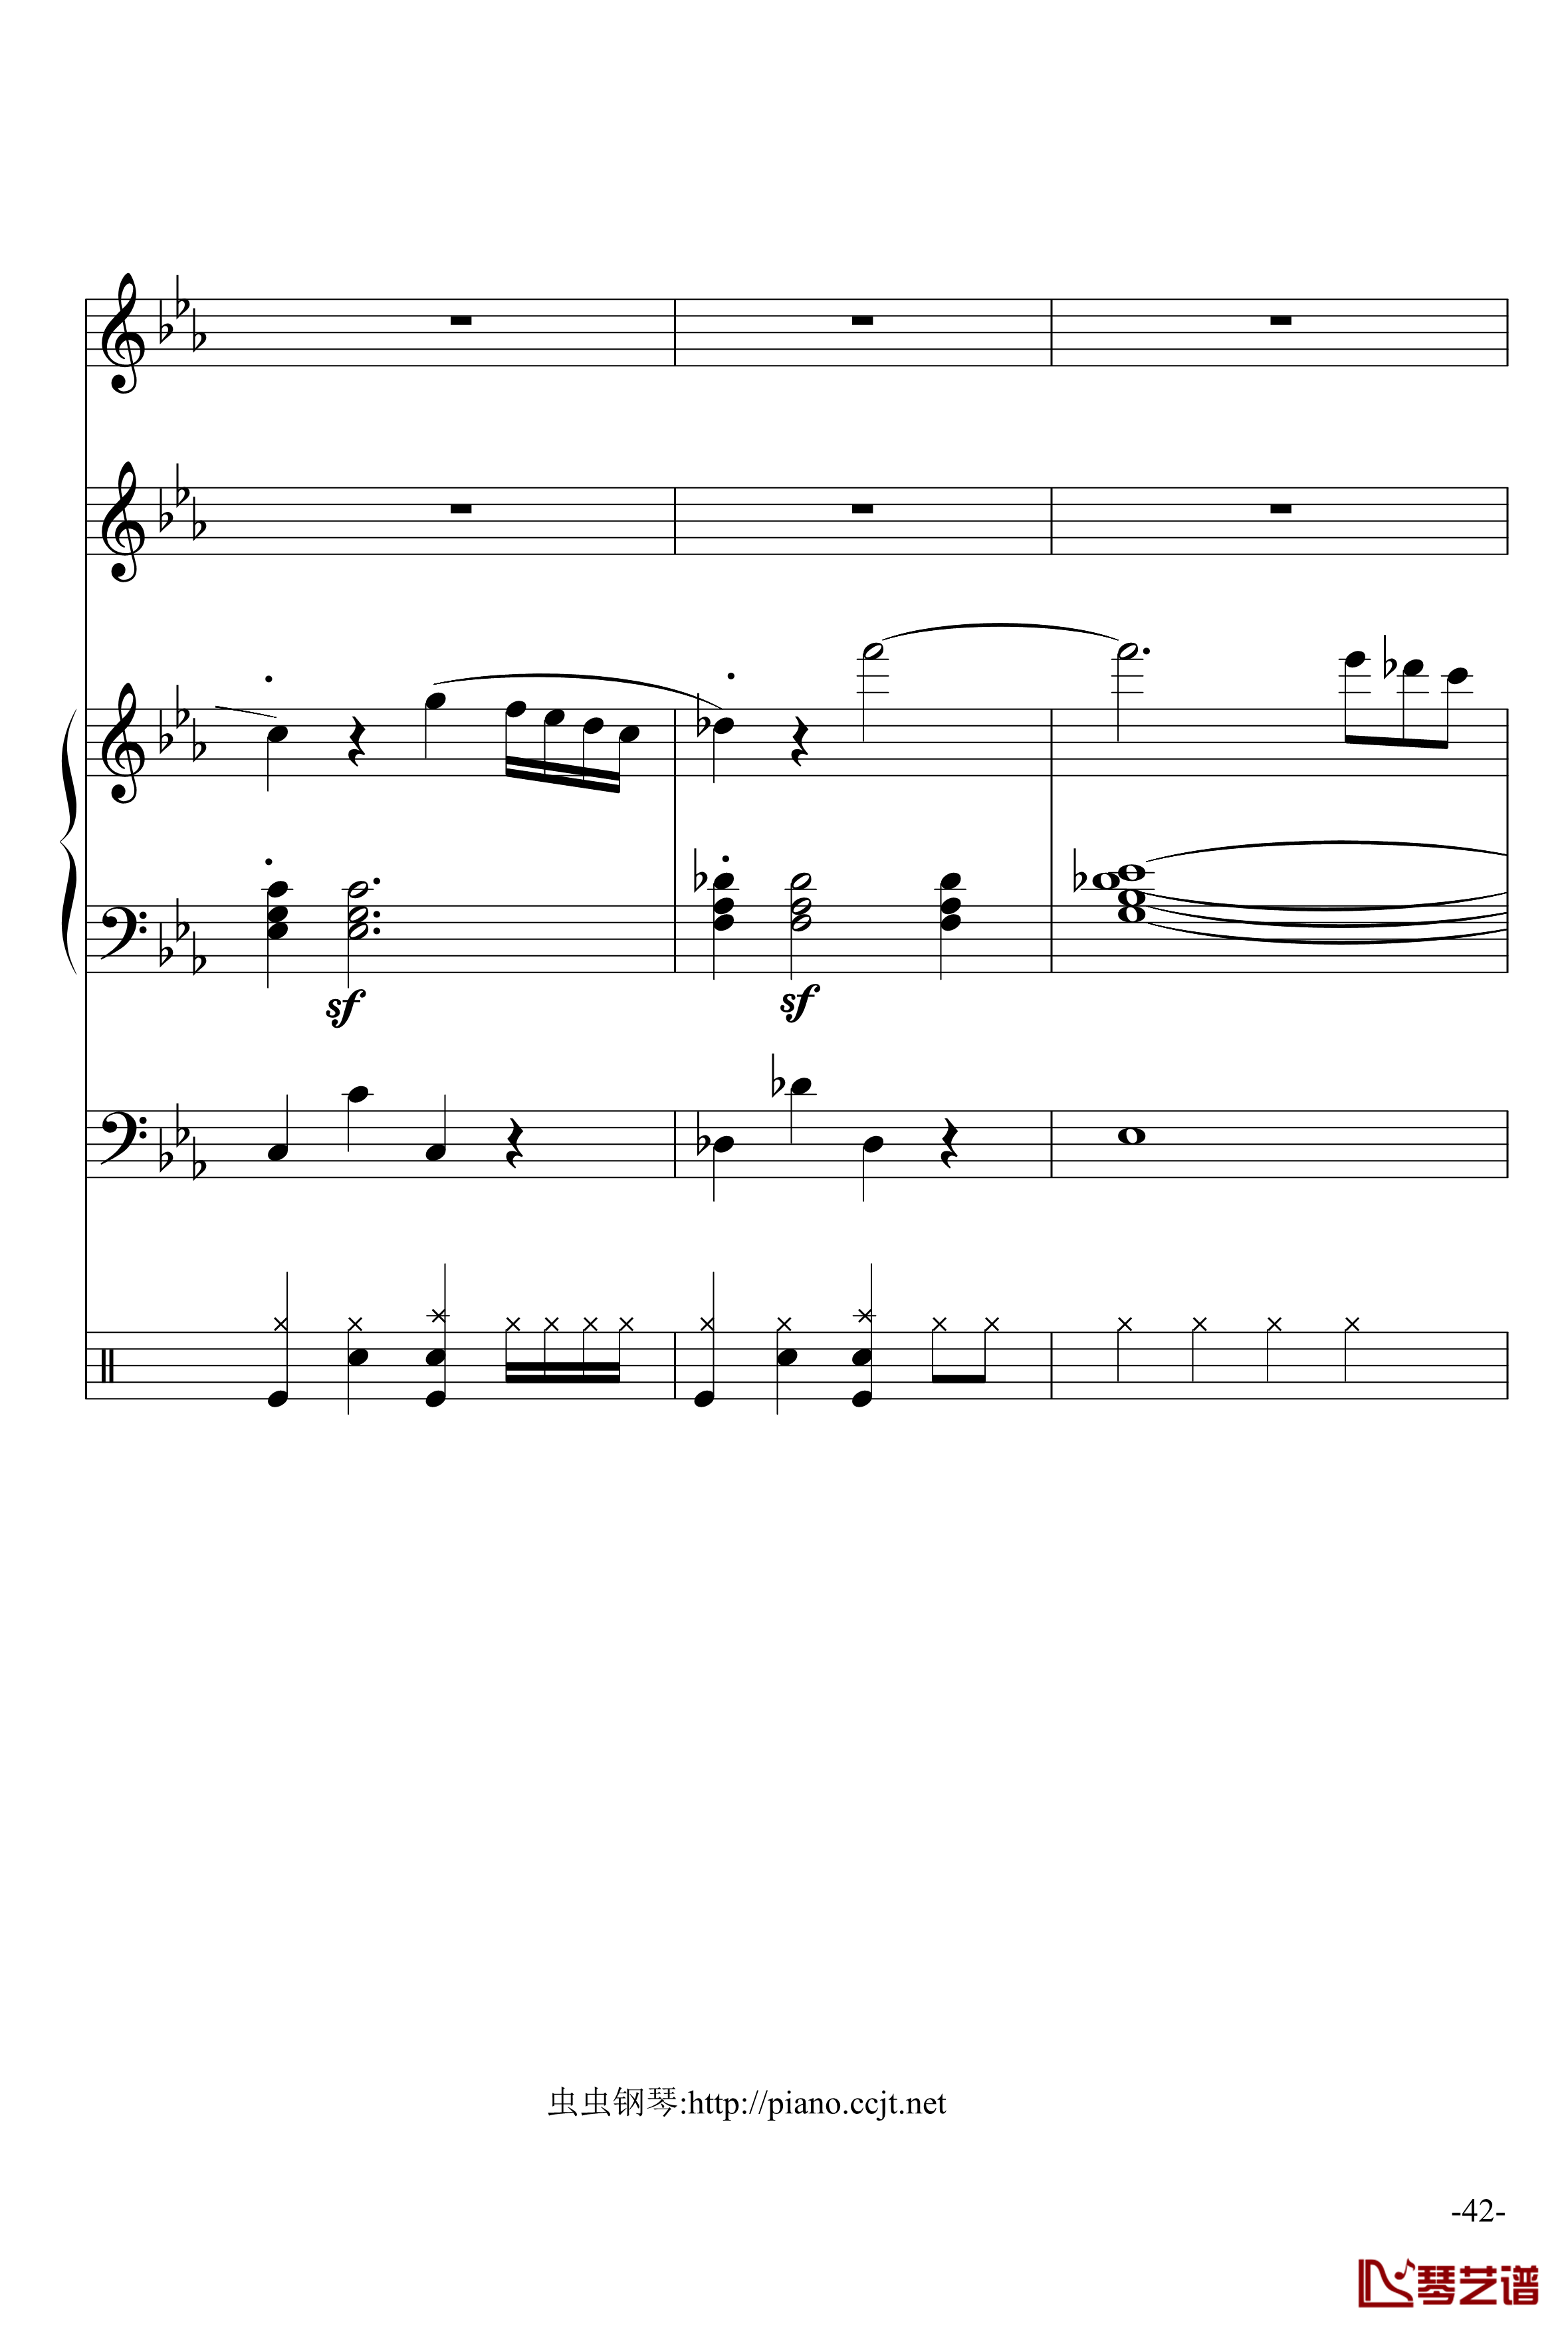 悲怆奏鸣曲钢琴谱-加小乐队-贝多芬-beethoven42